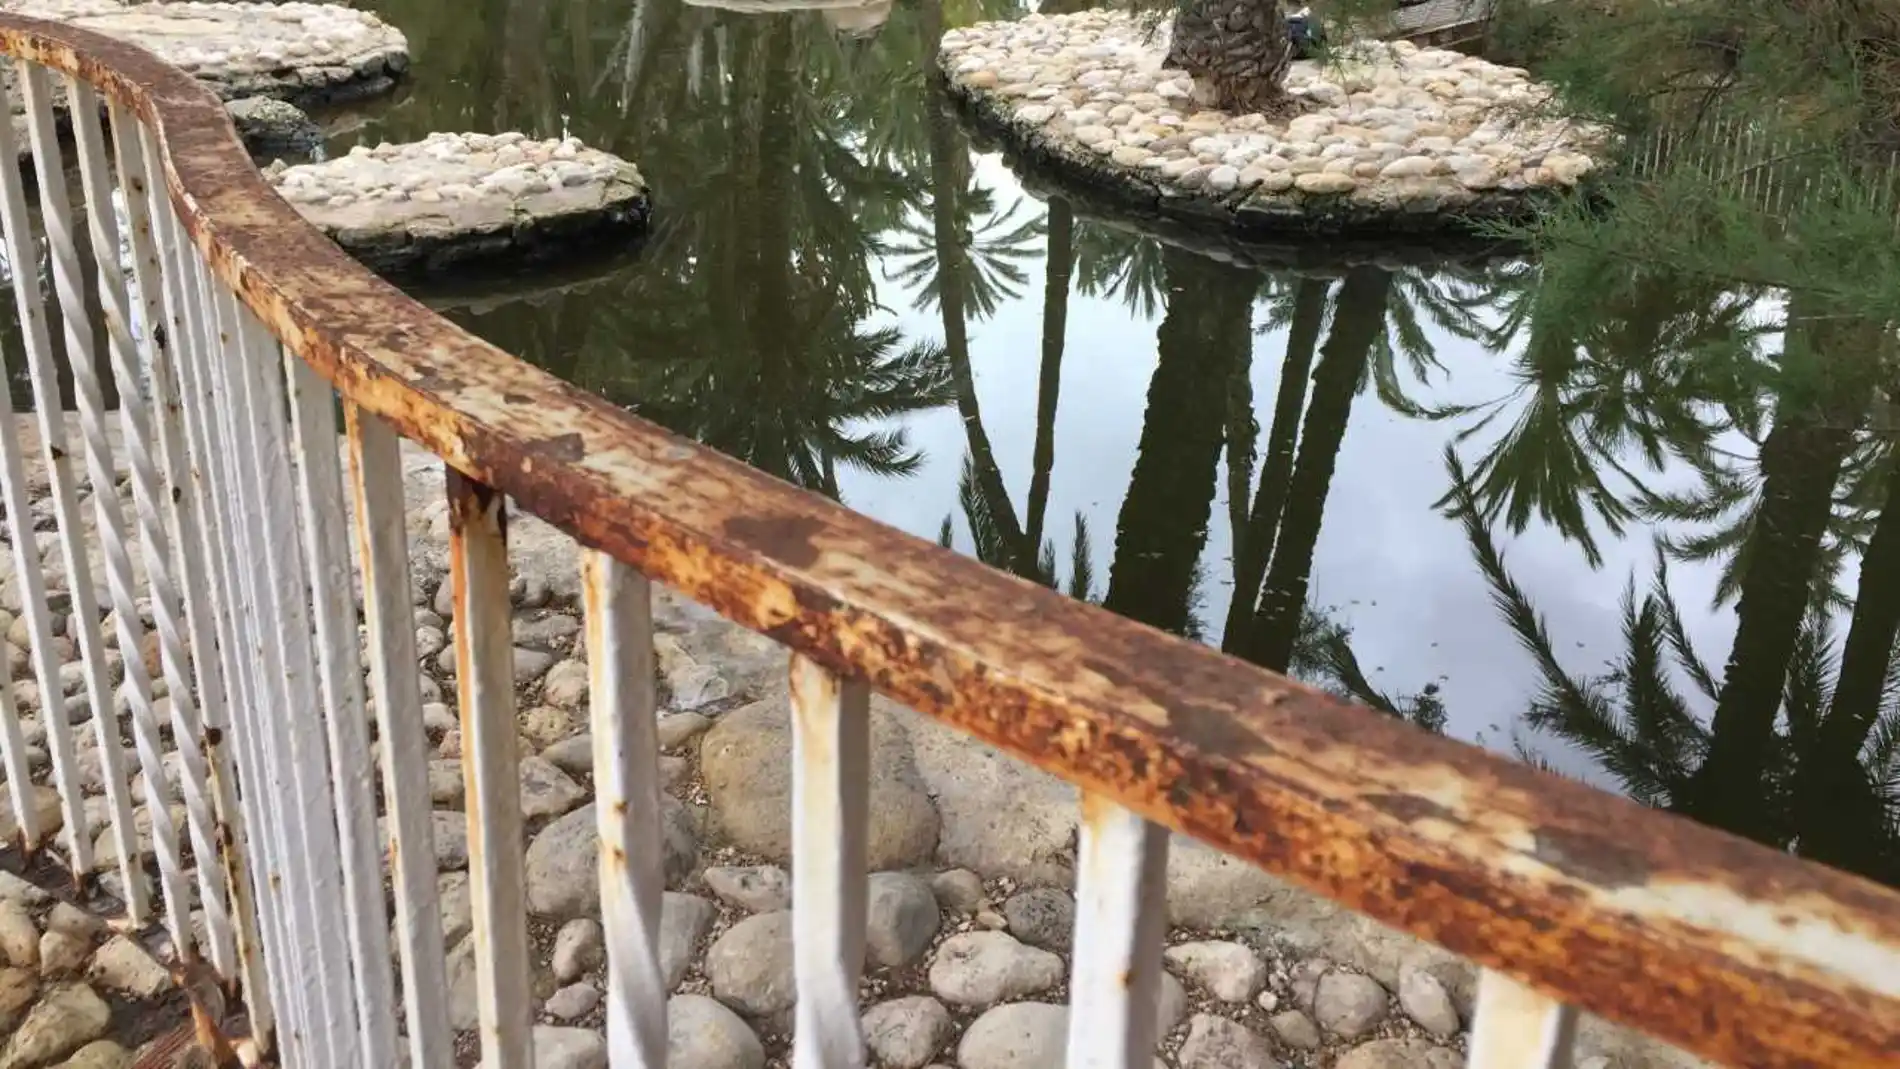 Vallado oxidado del vallado de uno d elos estanques del Parque Municipal de Elche